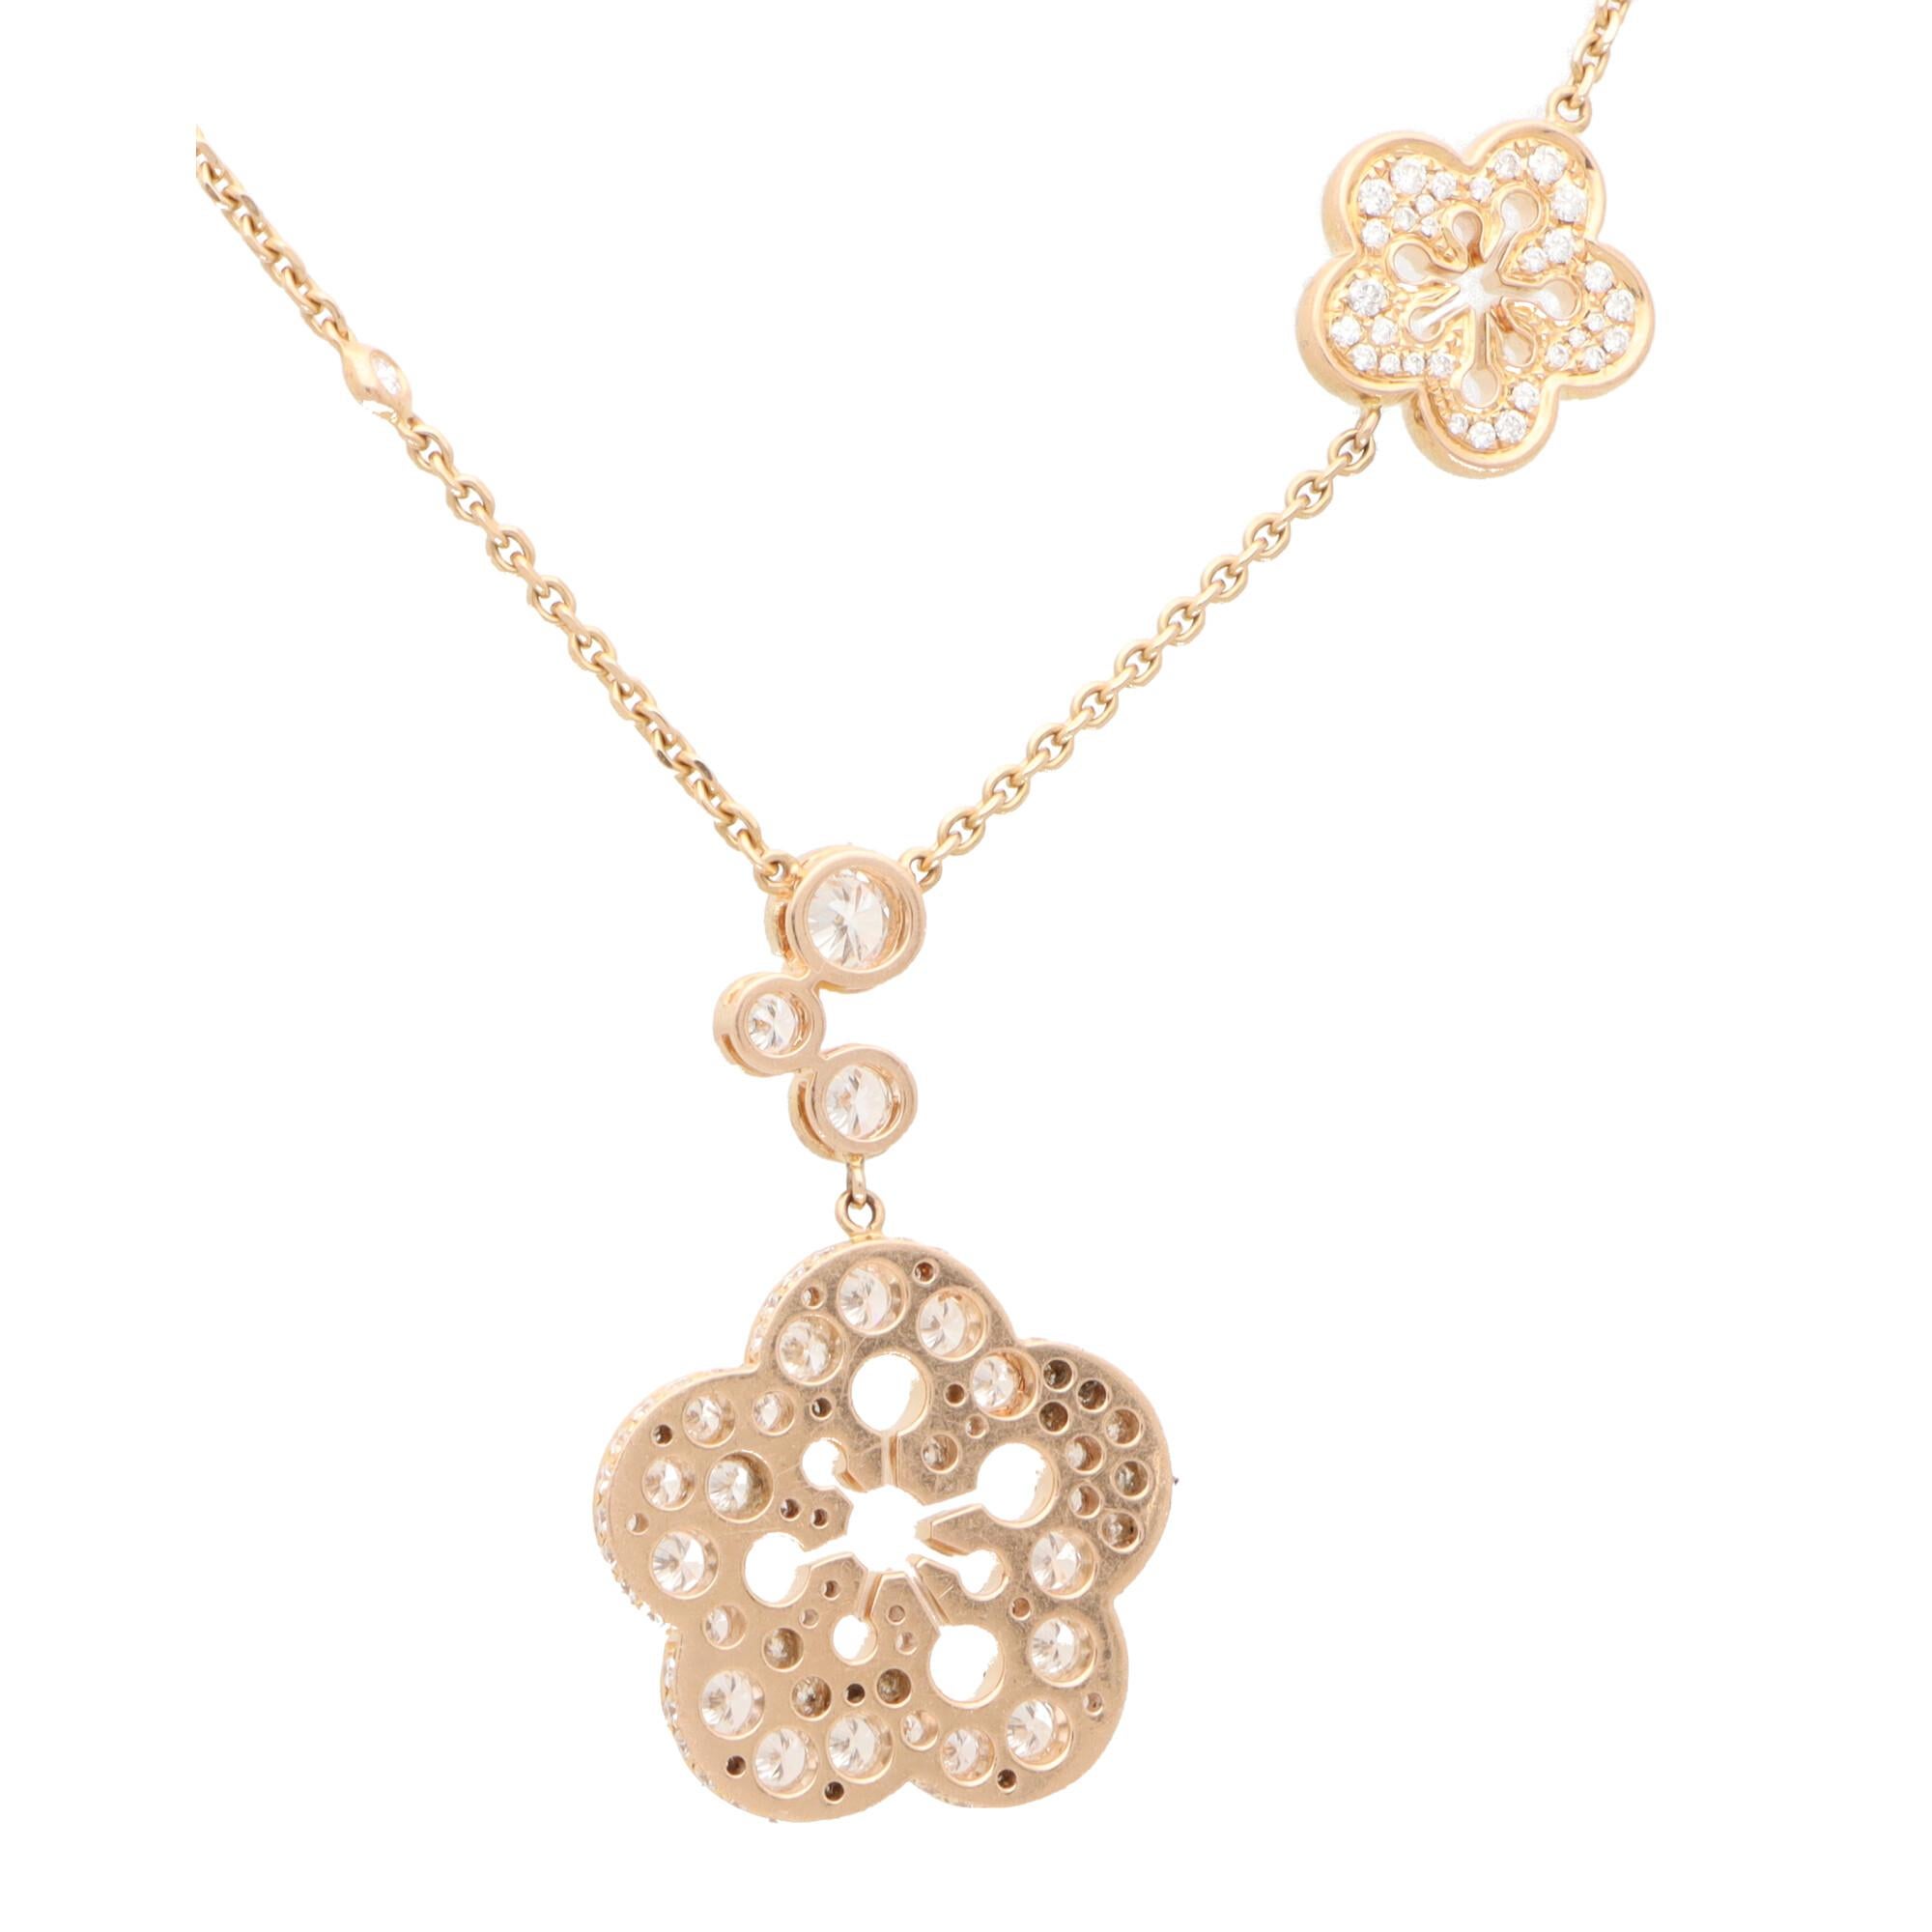 Modern Vintage Boodles Large Blossom Diamond Pendant Necklace Set in 18k Rose Gold